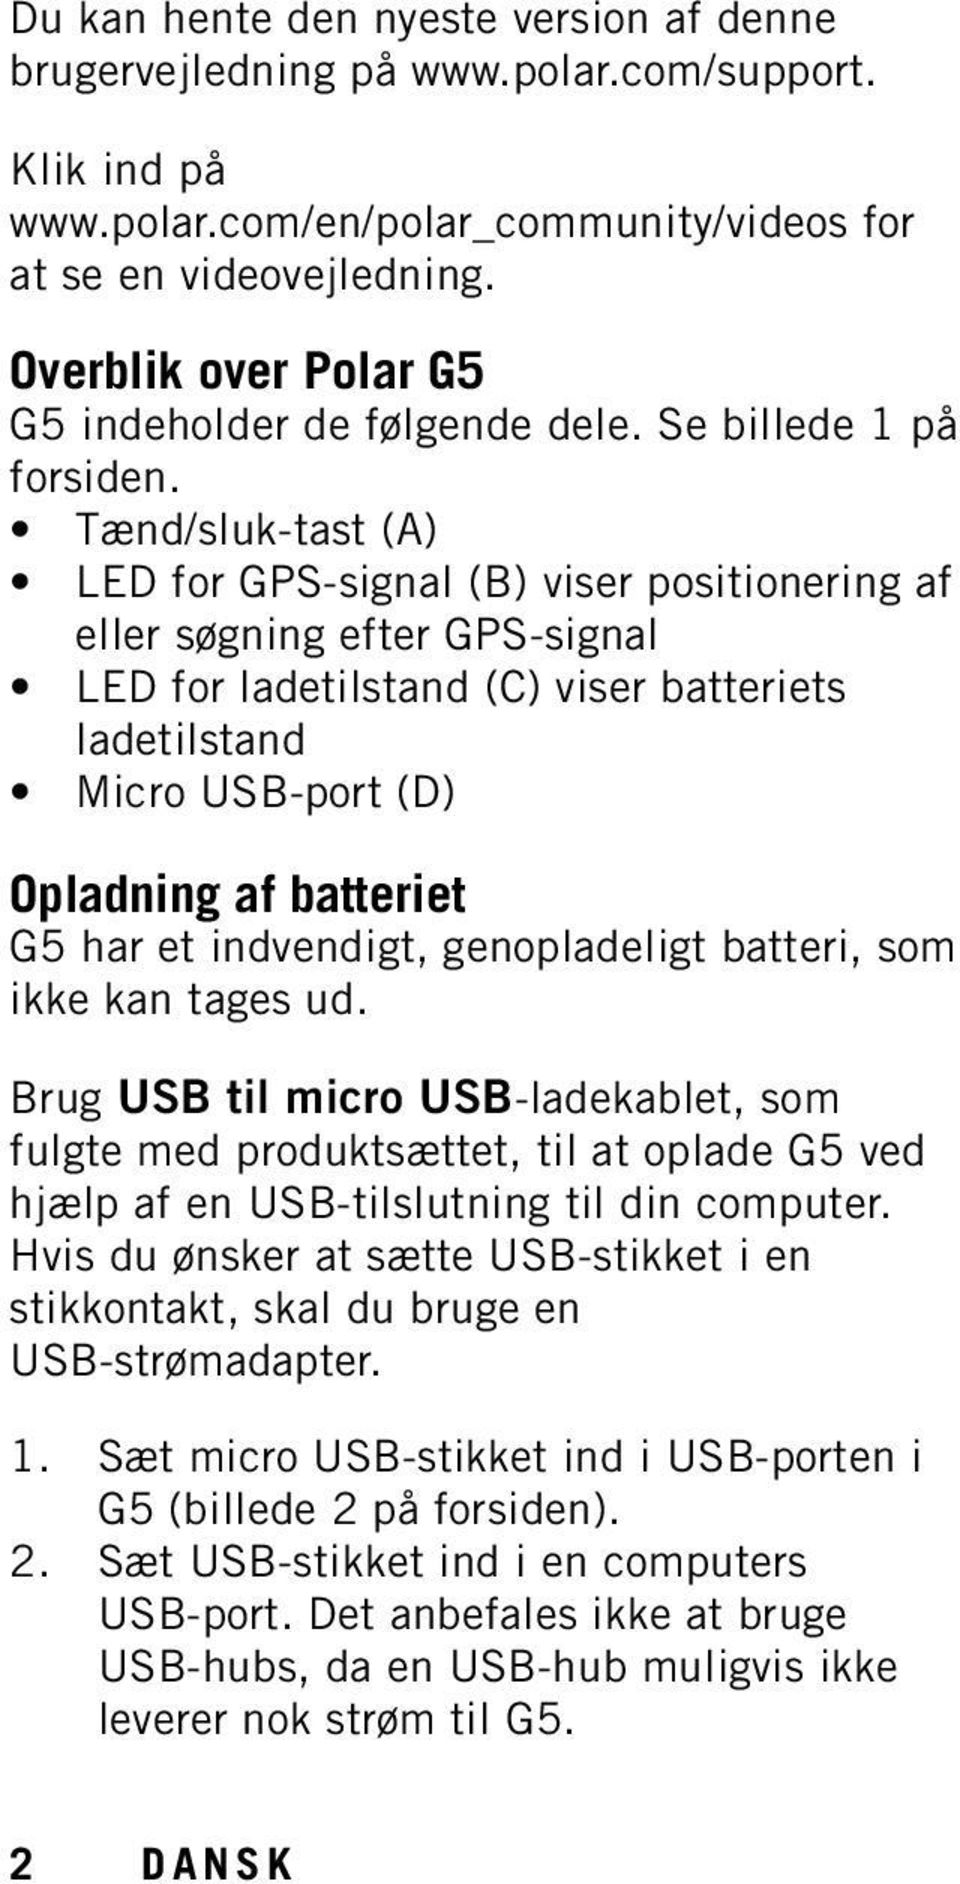 Tænd/sluk-tast (A) LED for GPS-signal (B) viser positionering af eller søgning efter GPS-signal LED for ladetilstand (C) viser batteriets ladetilstand Micro USB-port (D) Opladning af batteriet G5 har